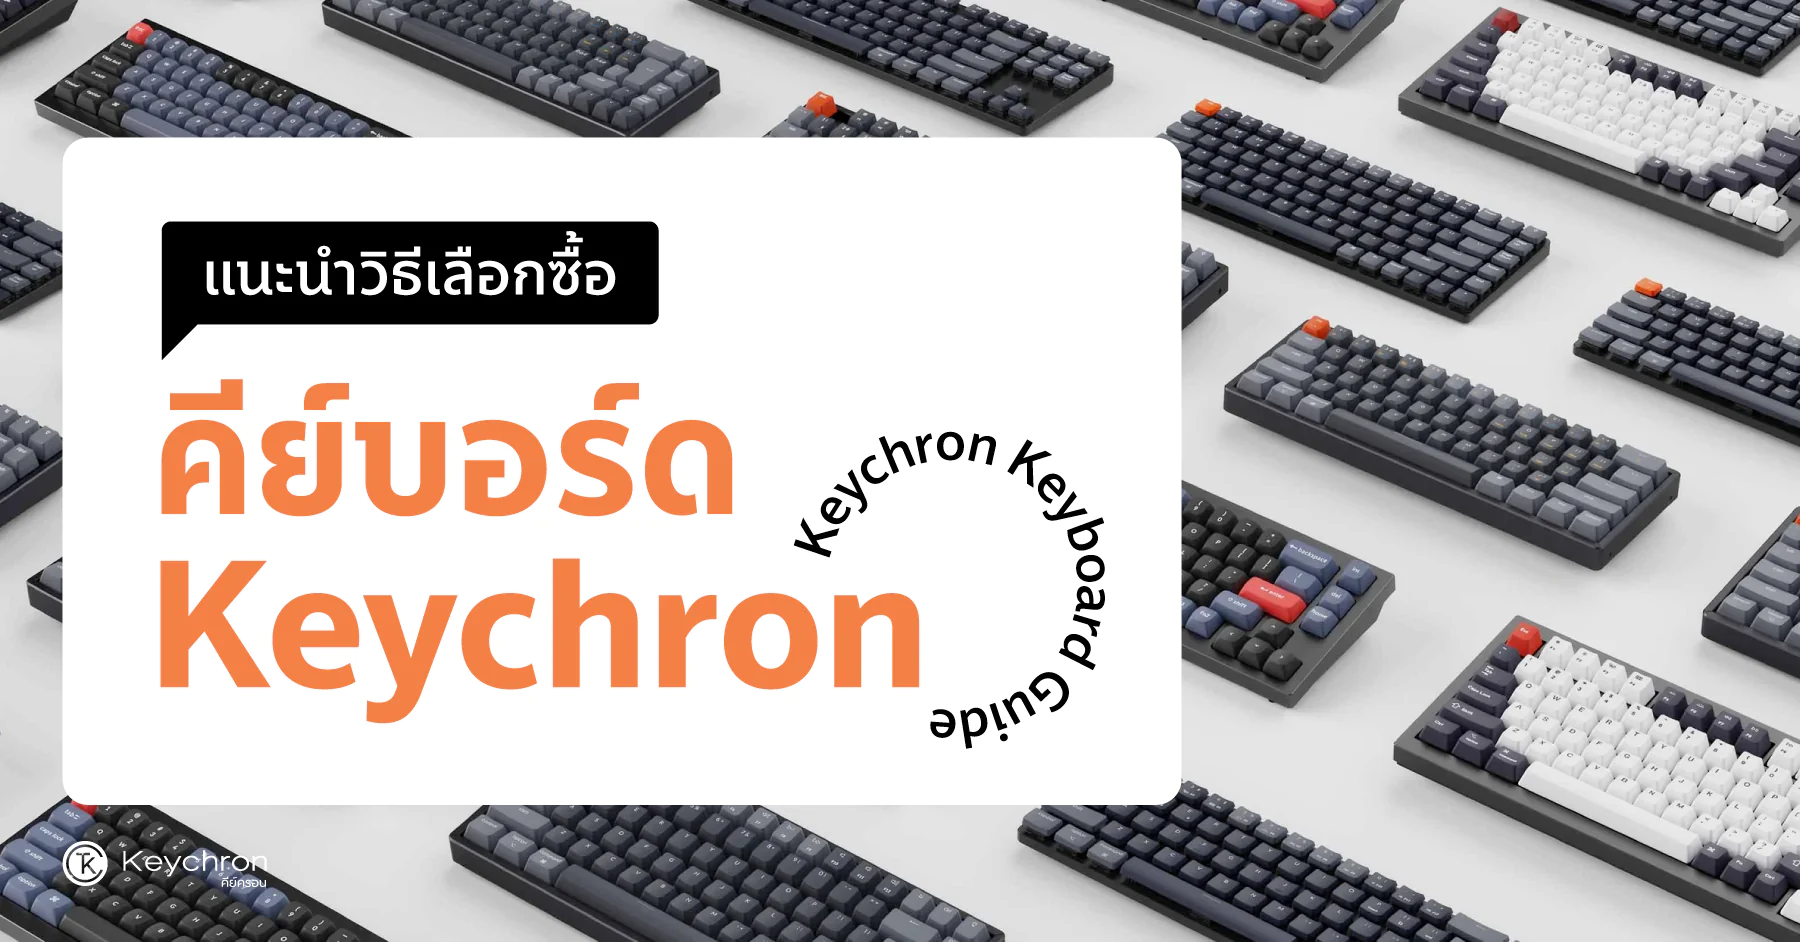 Keychron Keyboard Guide